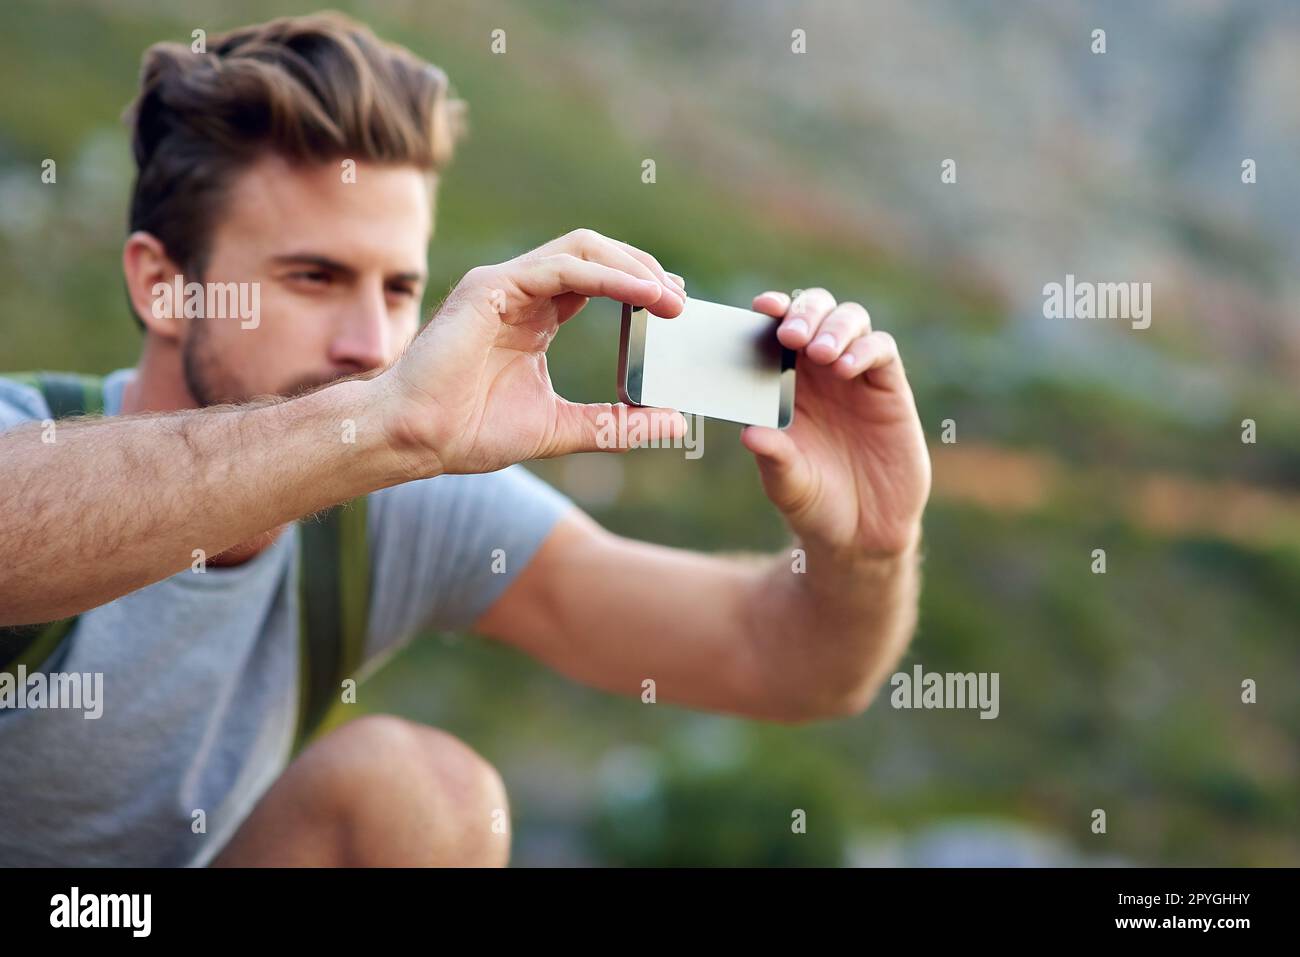 Prendre quelques photos pour les peeps de retour à la maison. un beau jeune homme prenant des photos pendant la randonnée. Banque D'Images